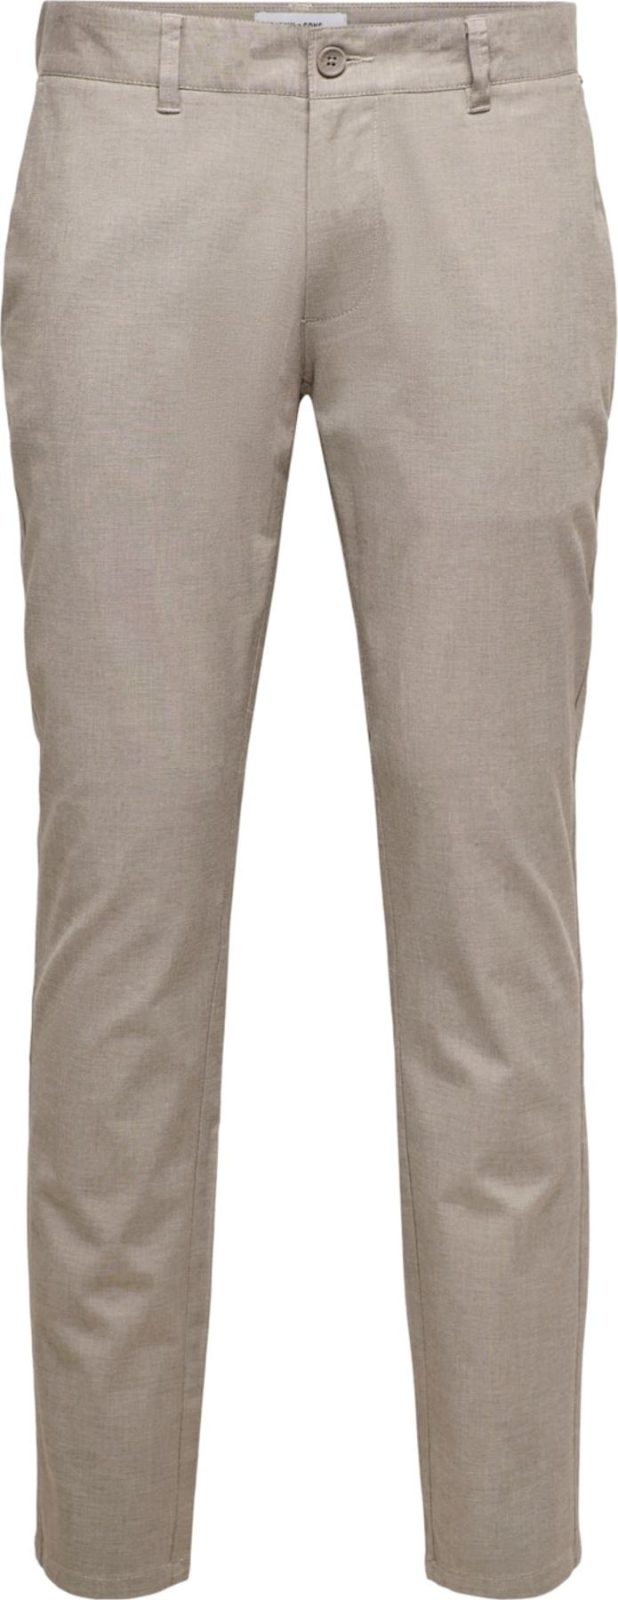 Only & Sons Chino kalhoty 'Mark' šedá